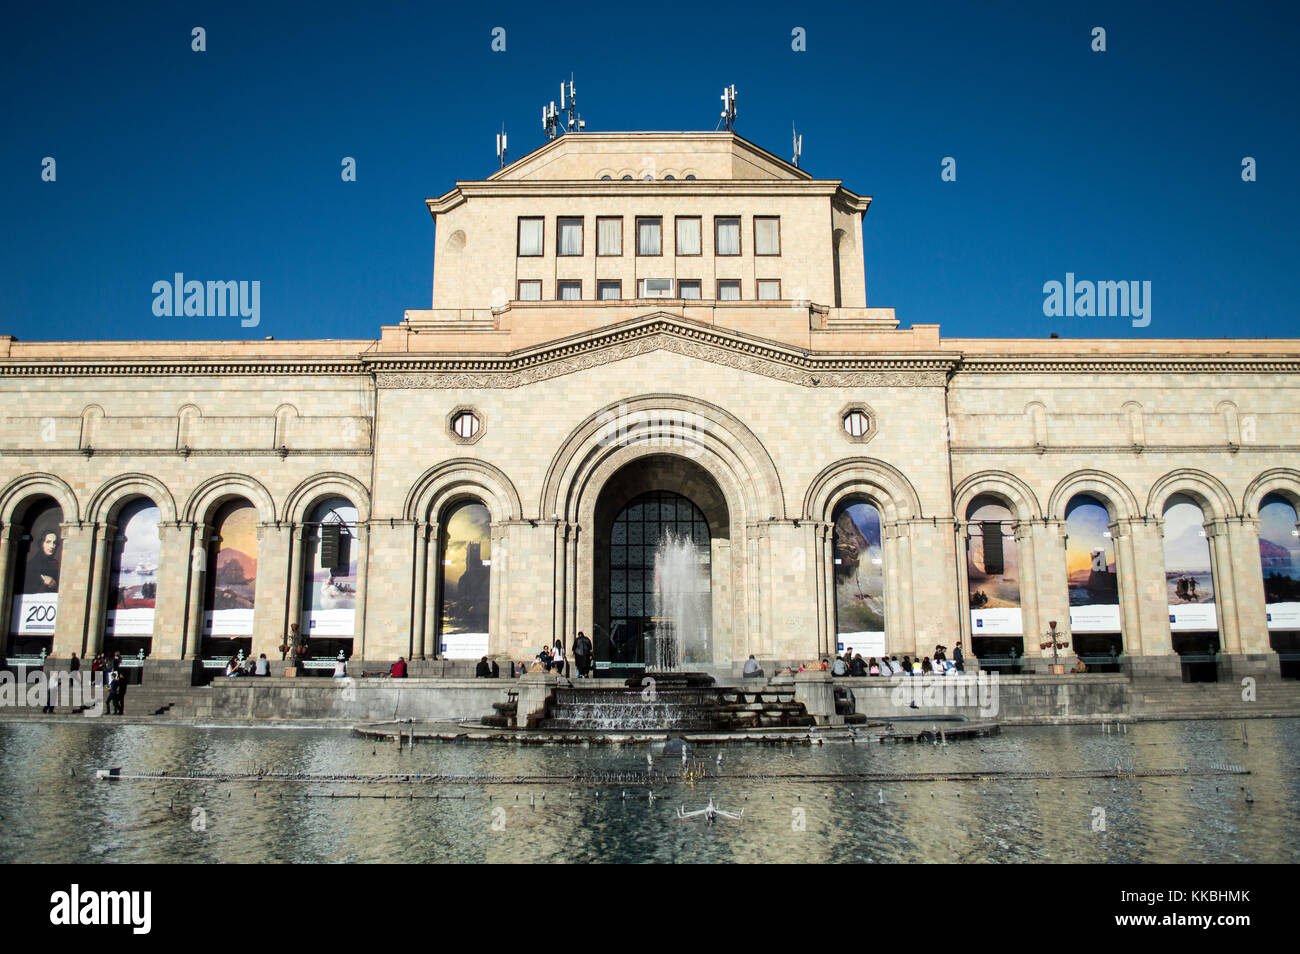 En Yerevan, Armenia - Octubre 8, 2017: el edificio de la galería nacional y el museo de historia de Armenia en la plaza de la república en Yerevan Foto de stock